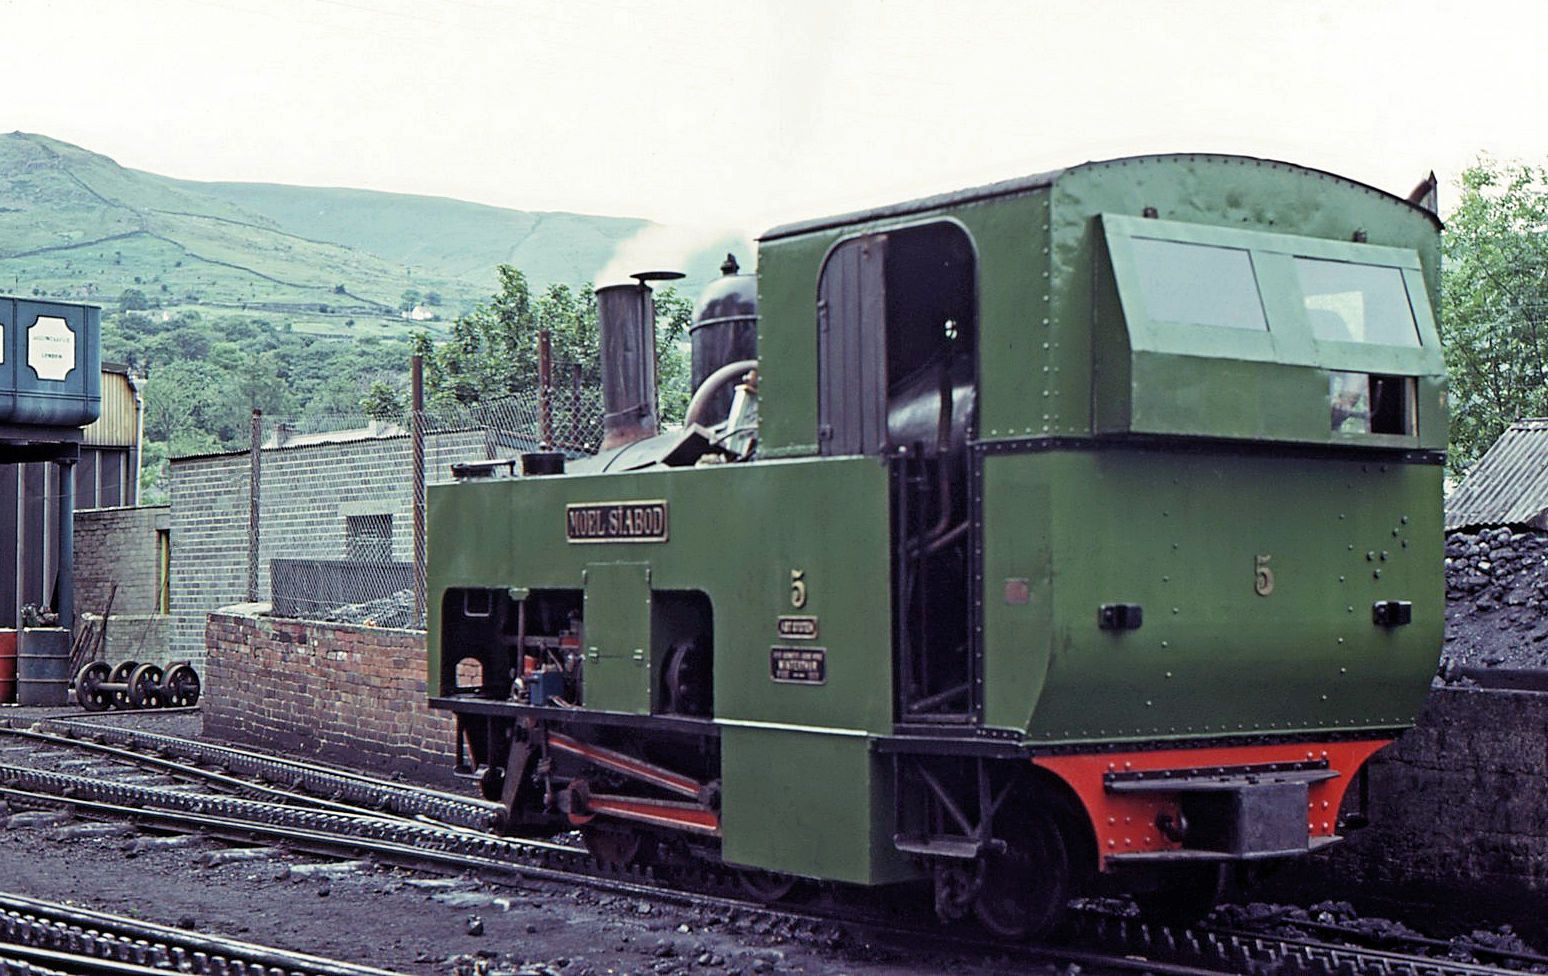 Die Original-Lokomotiven von 1895/96 (SLM Winterthur) für die Snowdon Mountain Railway / Rheilffordd yr Wyddfa: Lok 5  Moel Siabod  (Name eines nahegelegenen markanten Berges) ist 2017 nach fast zwanzigjährigem Stillstand und grosser Revision als besonders schöne Dampflok wieder in Betrieb gekommen. Hier steht sie in Llanberis am 21.Juli 1974 